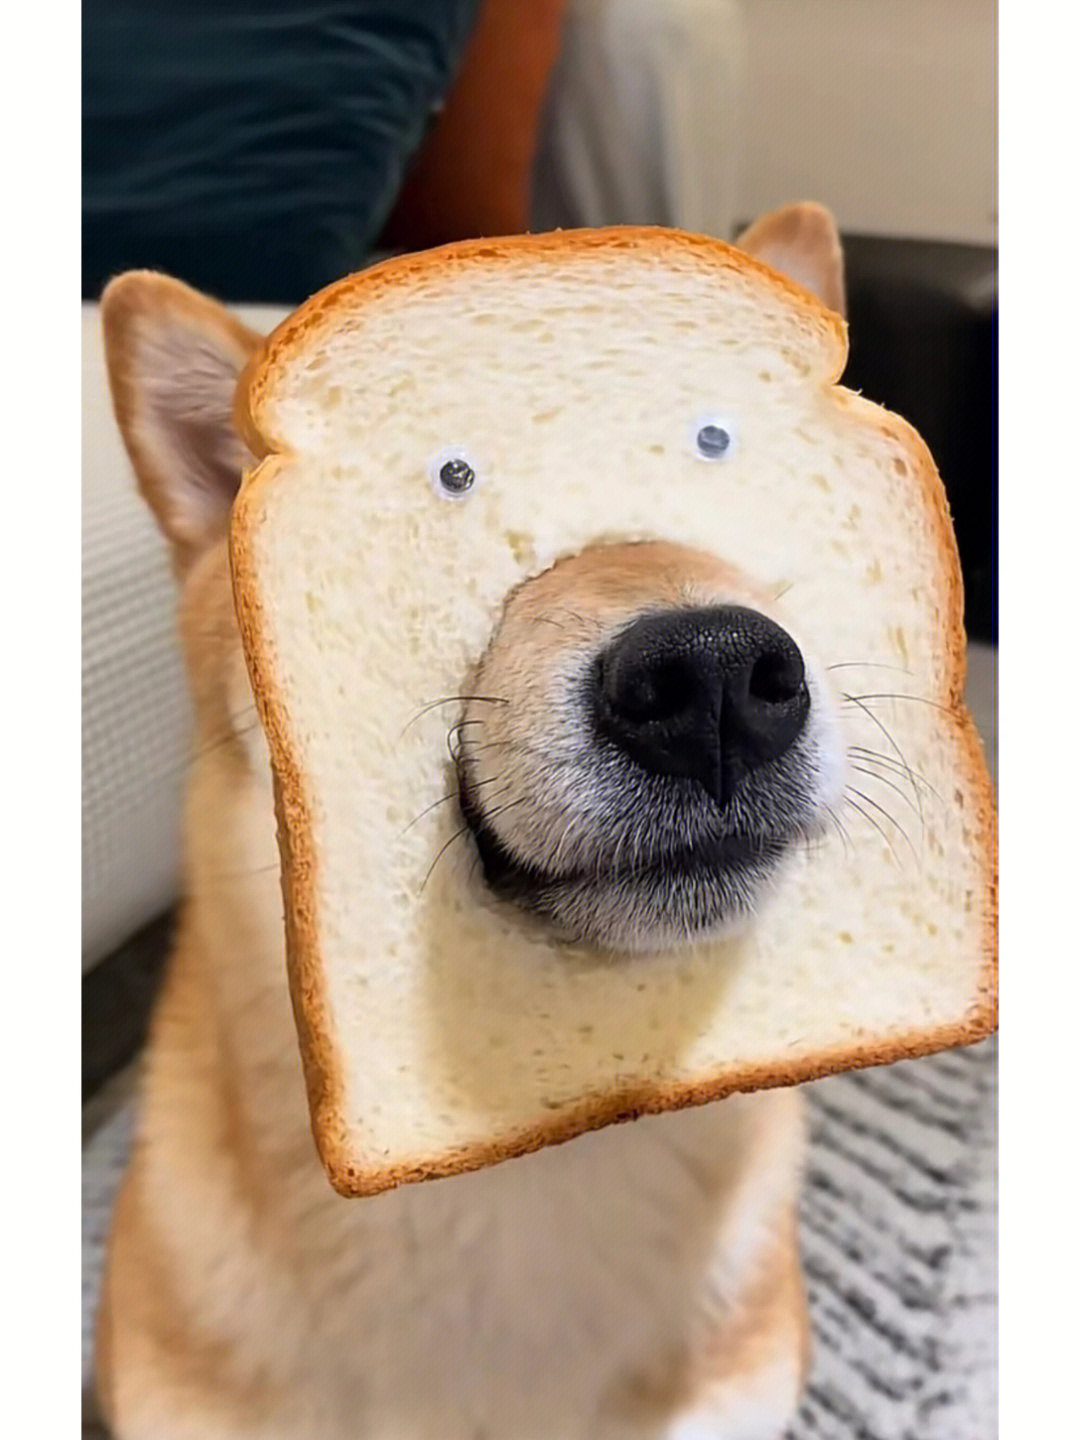 哈哈哈别人家的面包狗怎么这么蠢萌